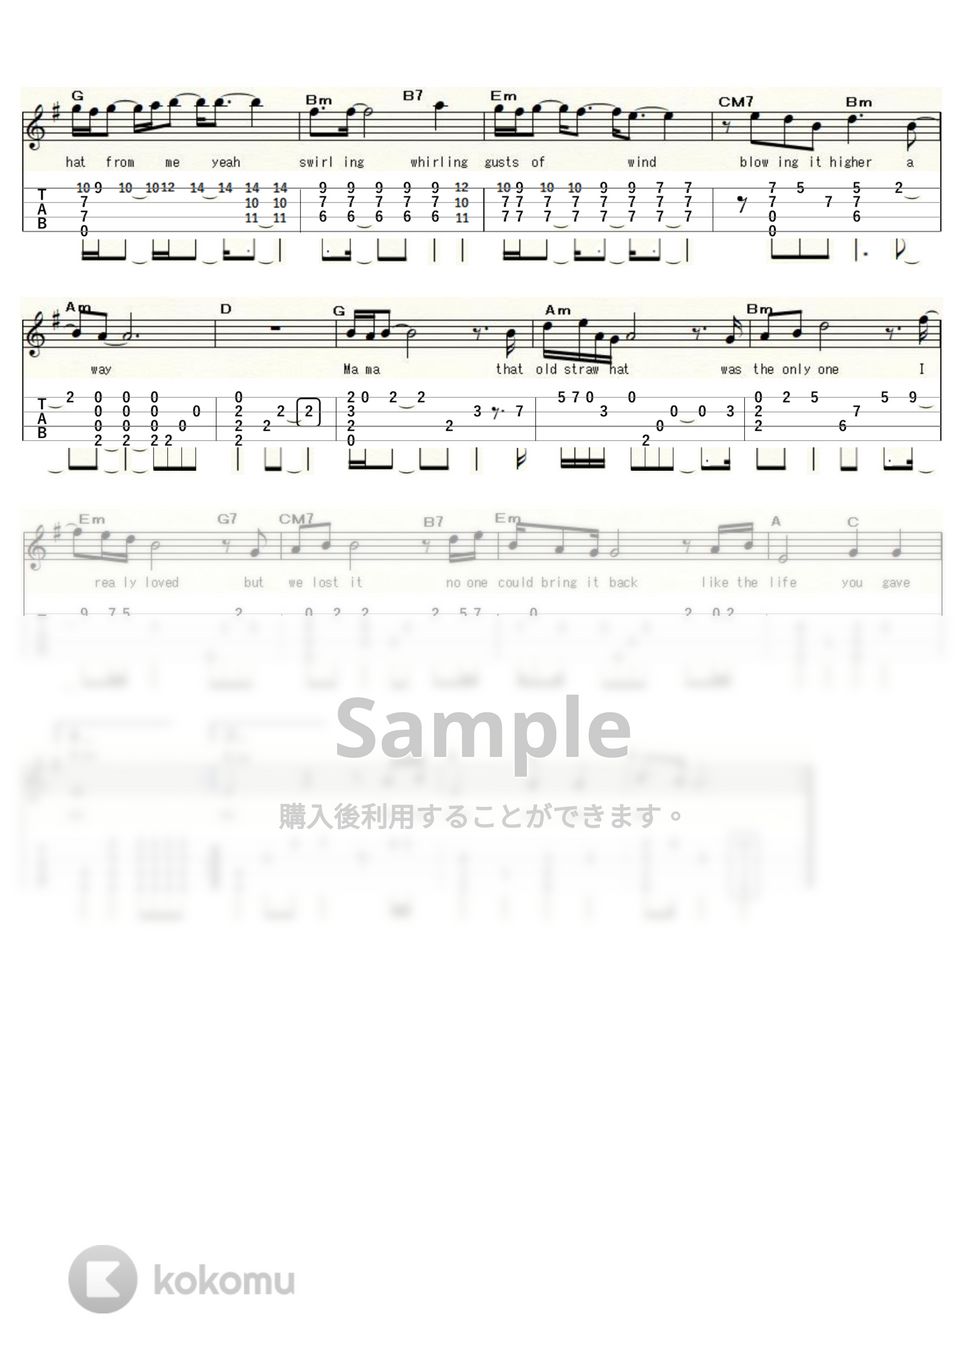 ジョー山中 - 人間の証明のテーマ (ｳｸﾚﾚｿﾛ/Low-G/中級) by ukulelepapa